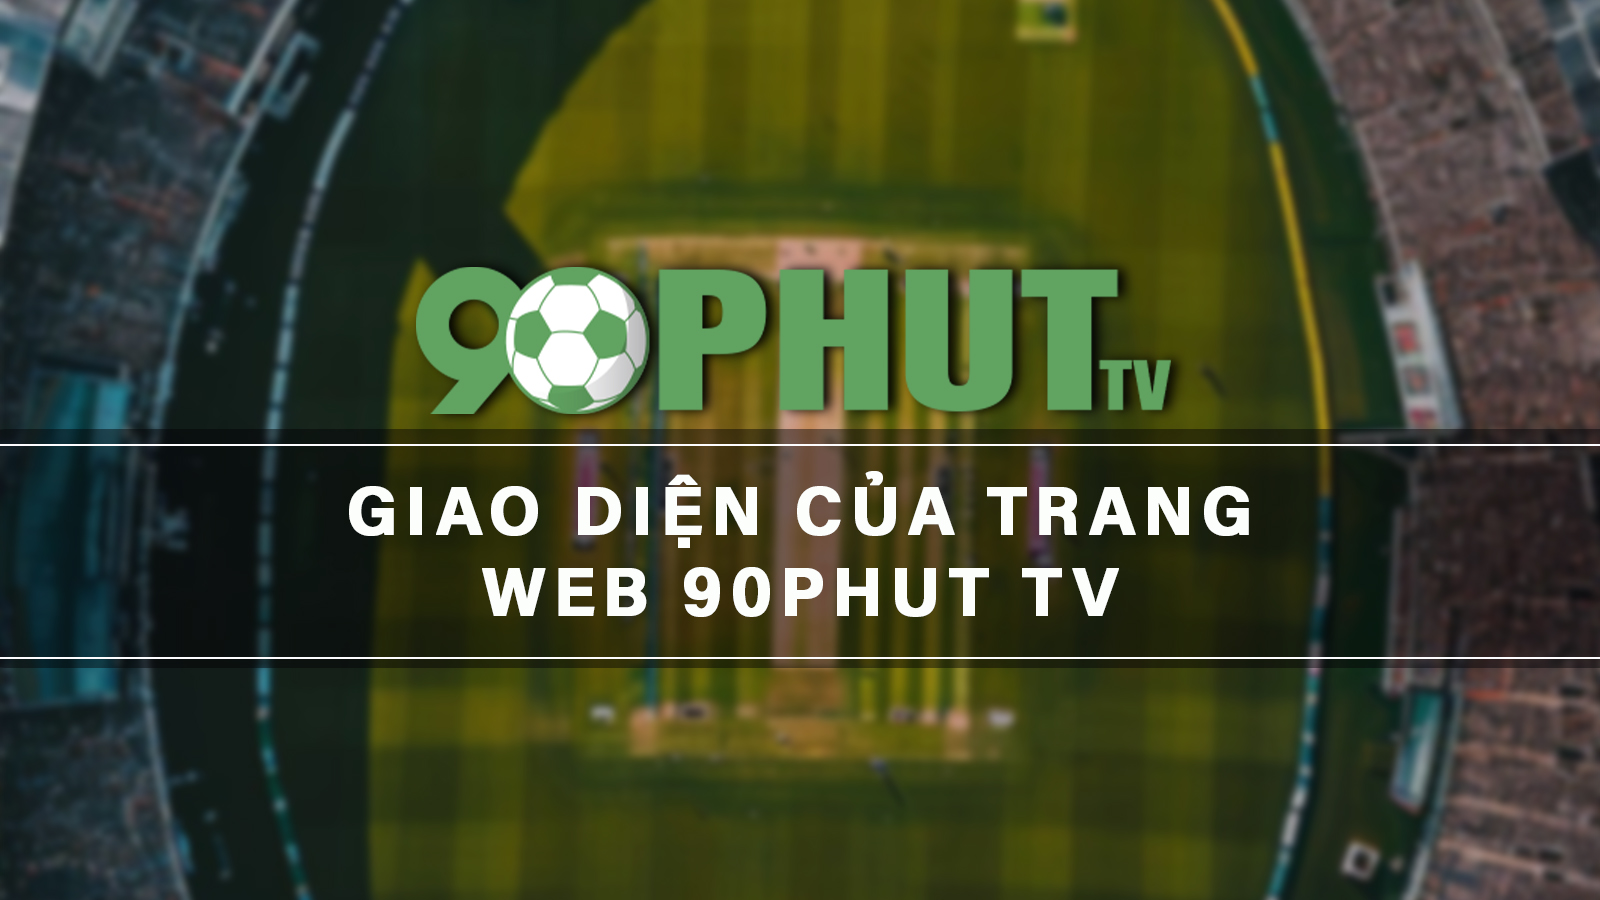 Giao diện của website 90 Phut TV